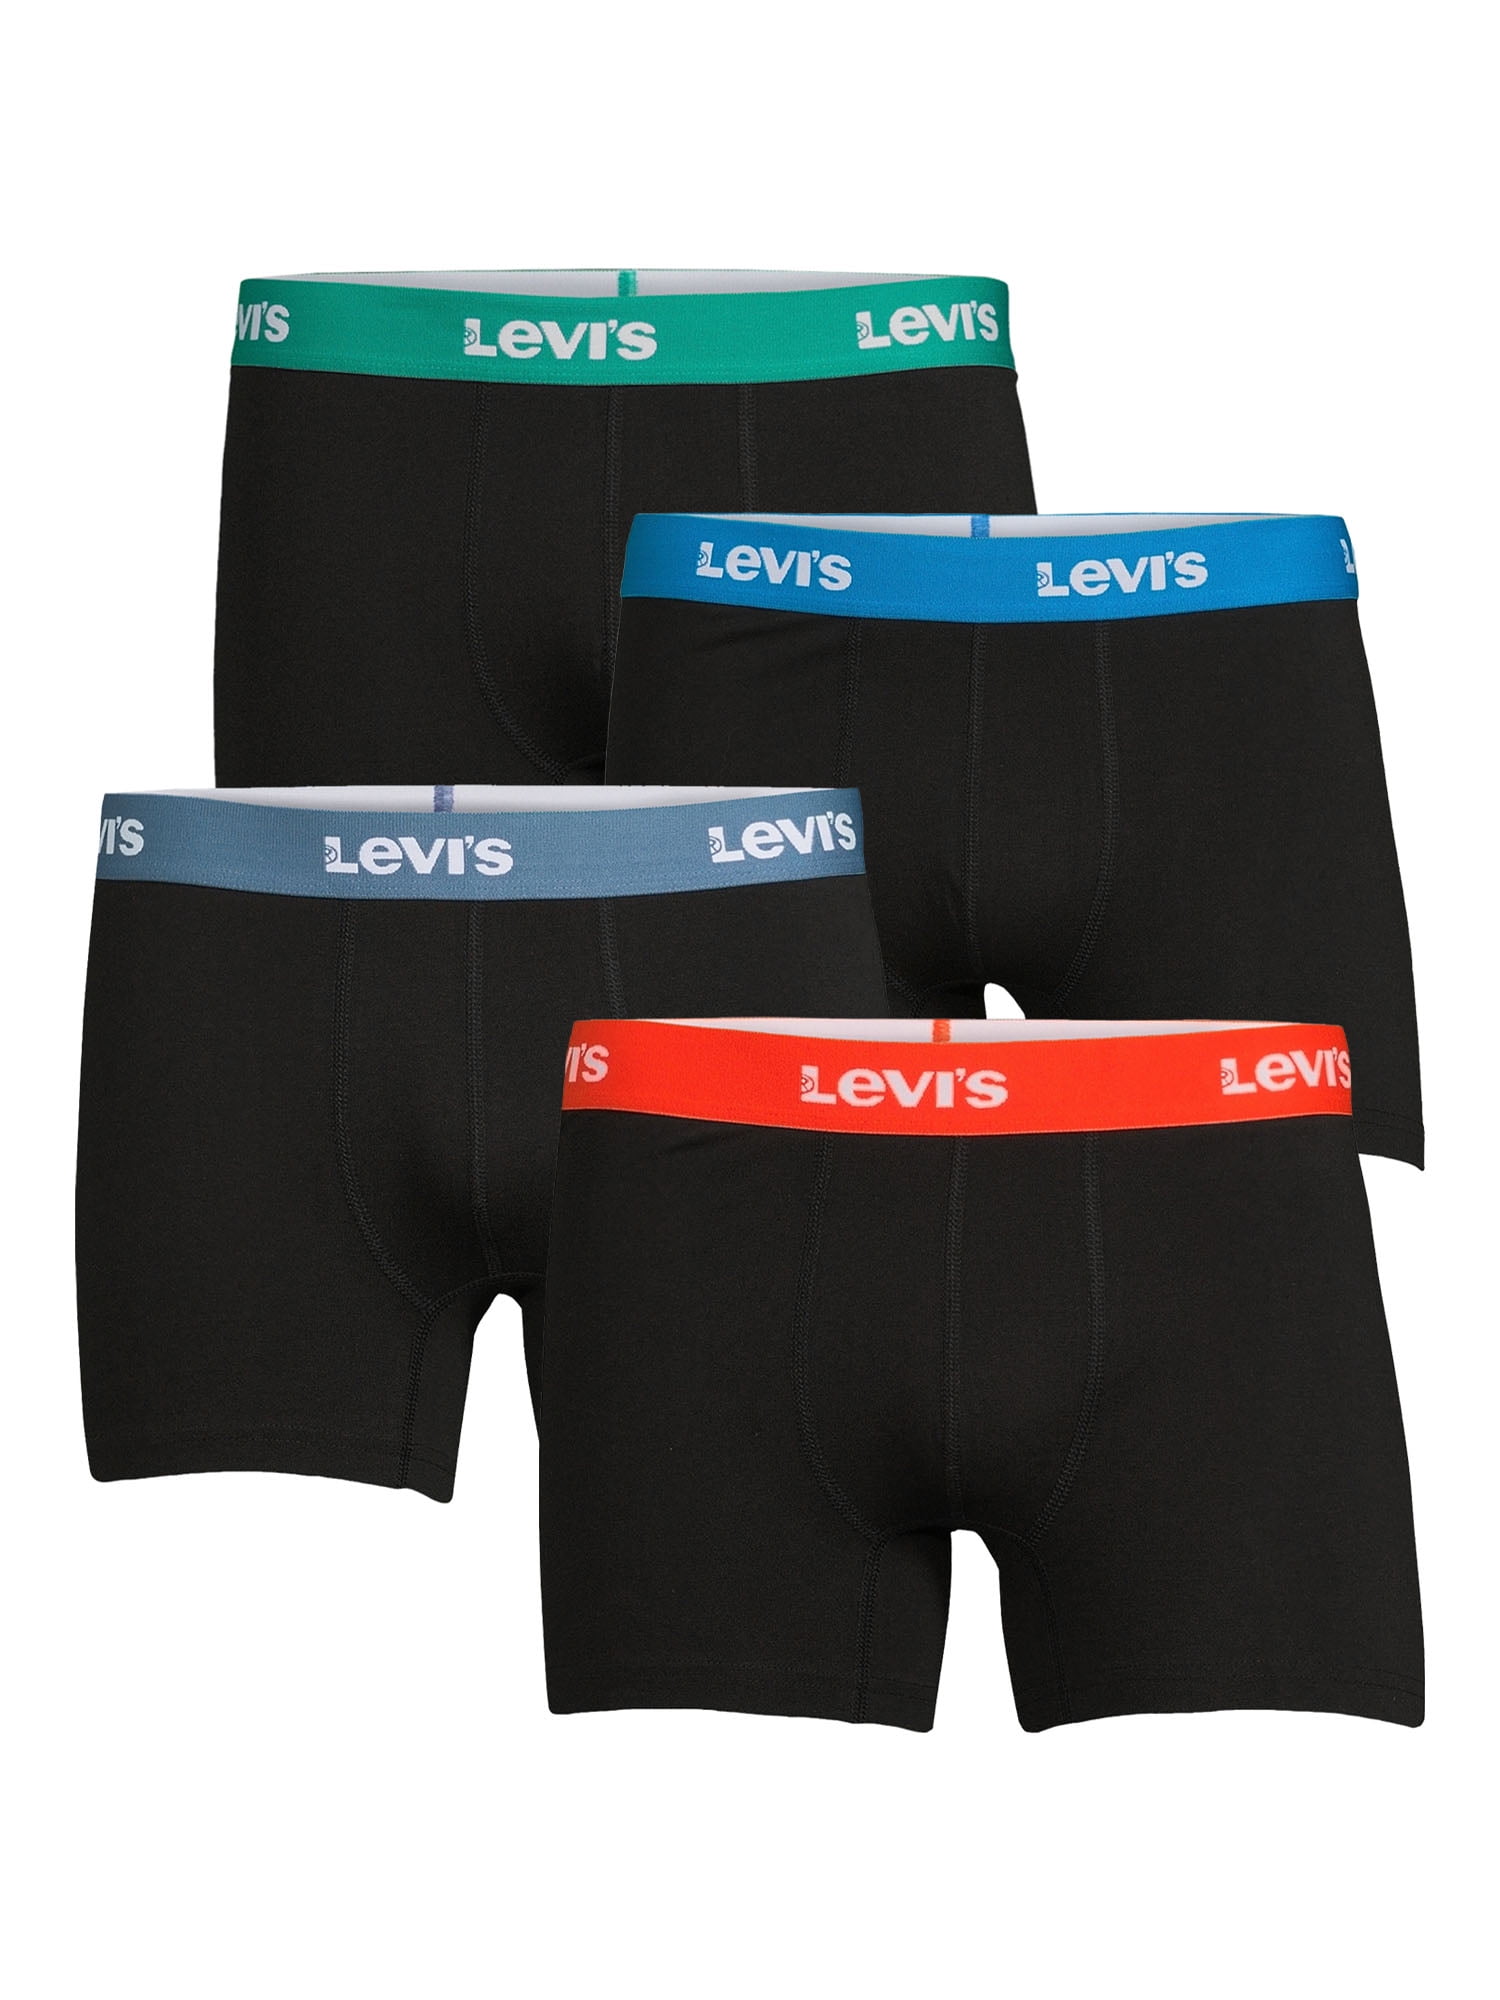 Levi's 4-Pack Adult Mens Cotton Stretch Boxer Briefs, Sizes S-XL